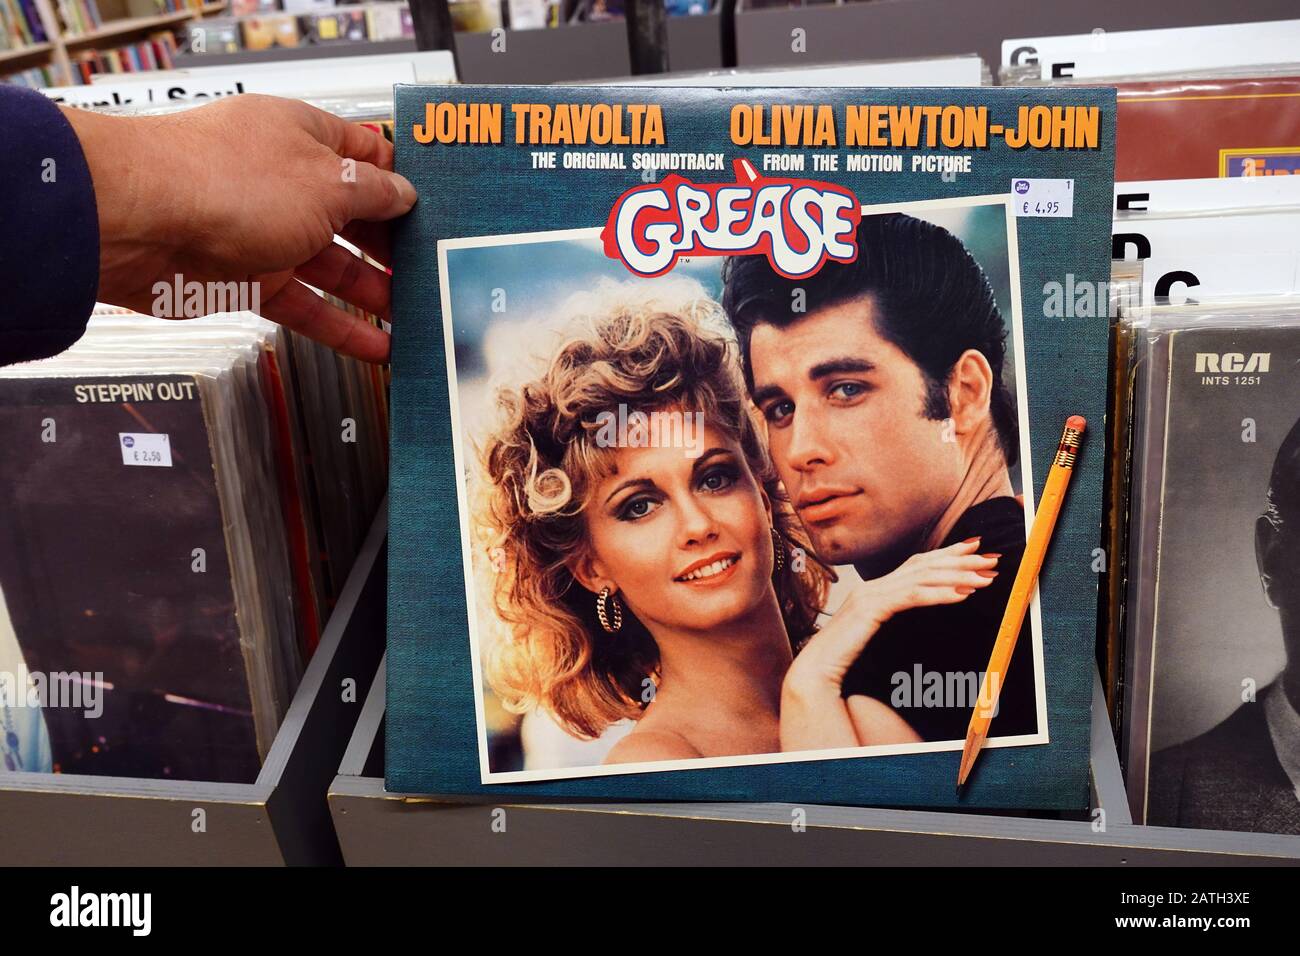 Album LP de Grease: La bande originale de Soundtrack de l'Image de mouvement Banque D'Images